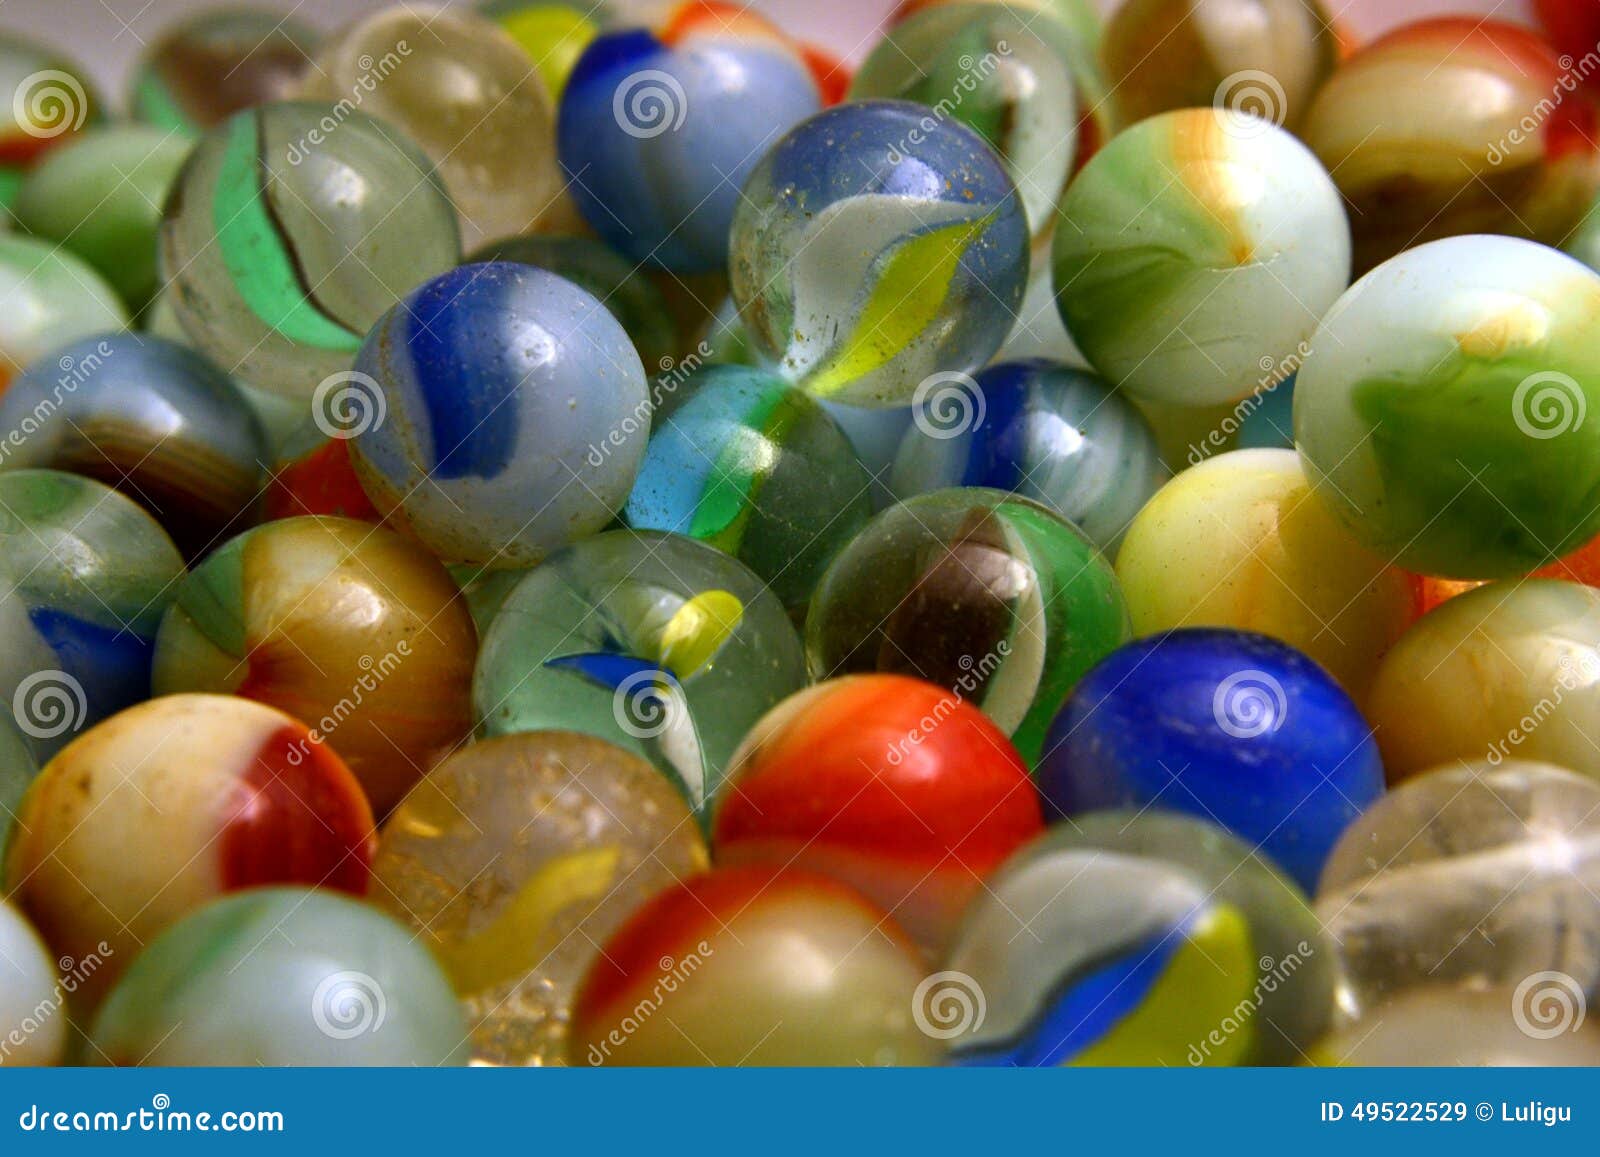 glass colored balls.